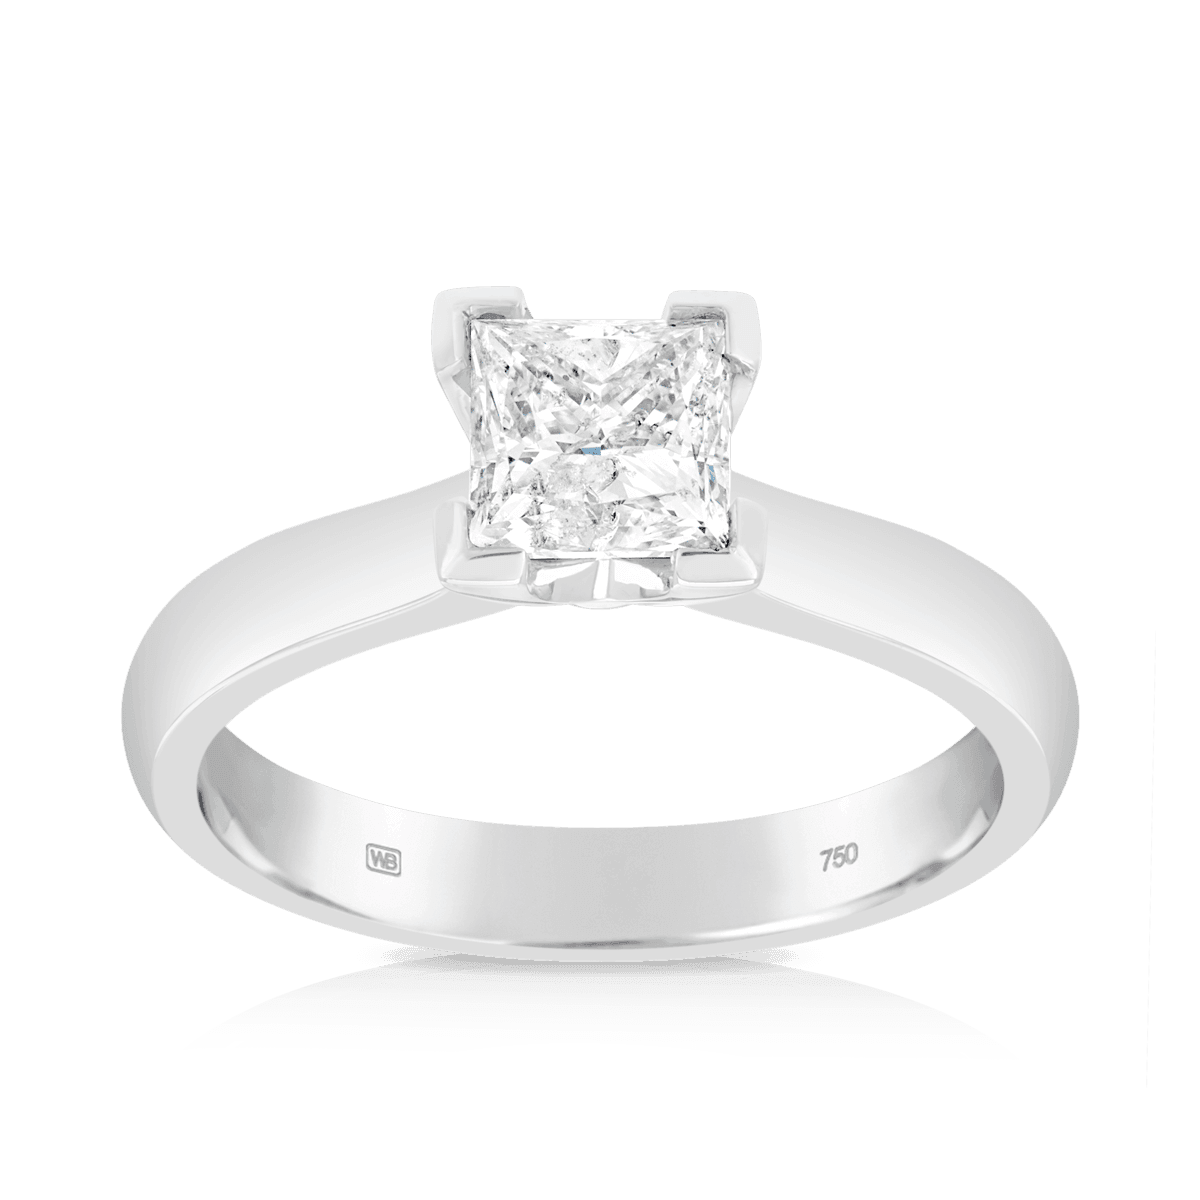 Shop Princess Cut Engagement Rings at Robbins Brothers